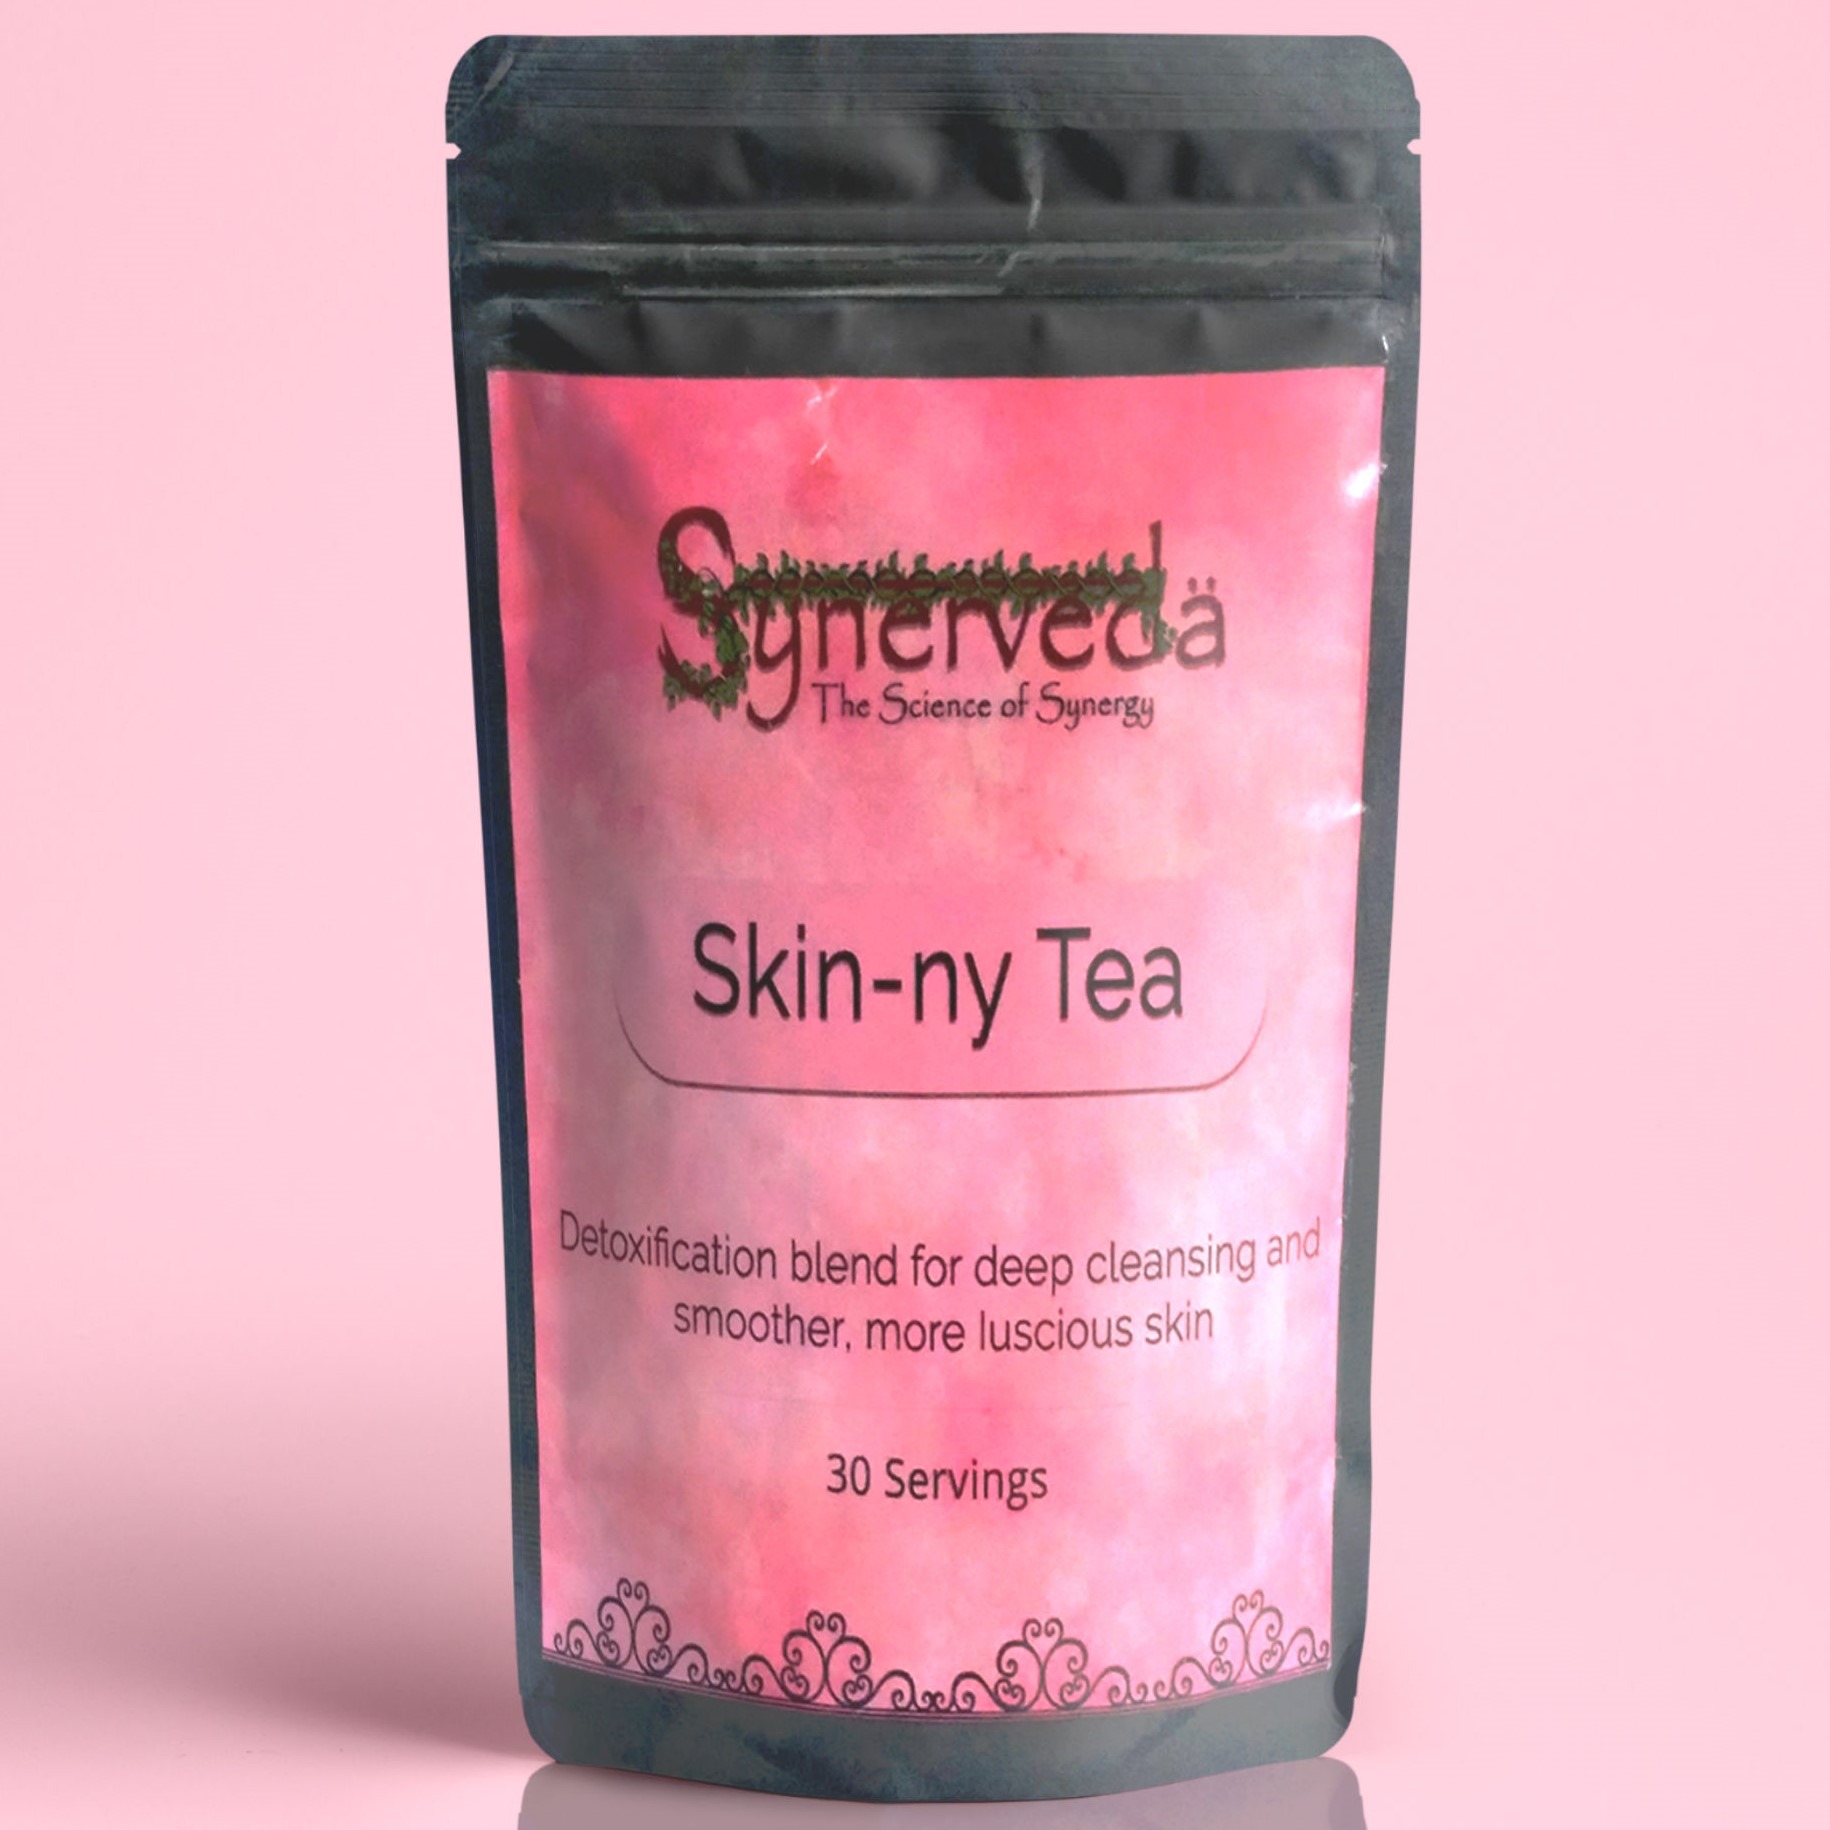 Synerveda Skin-ny Tea